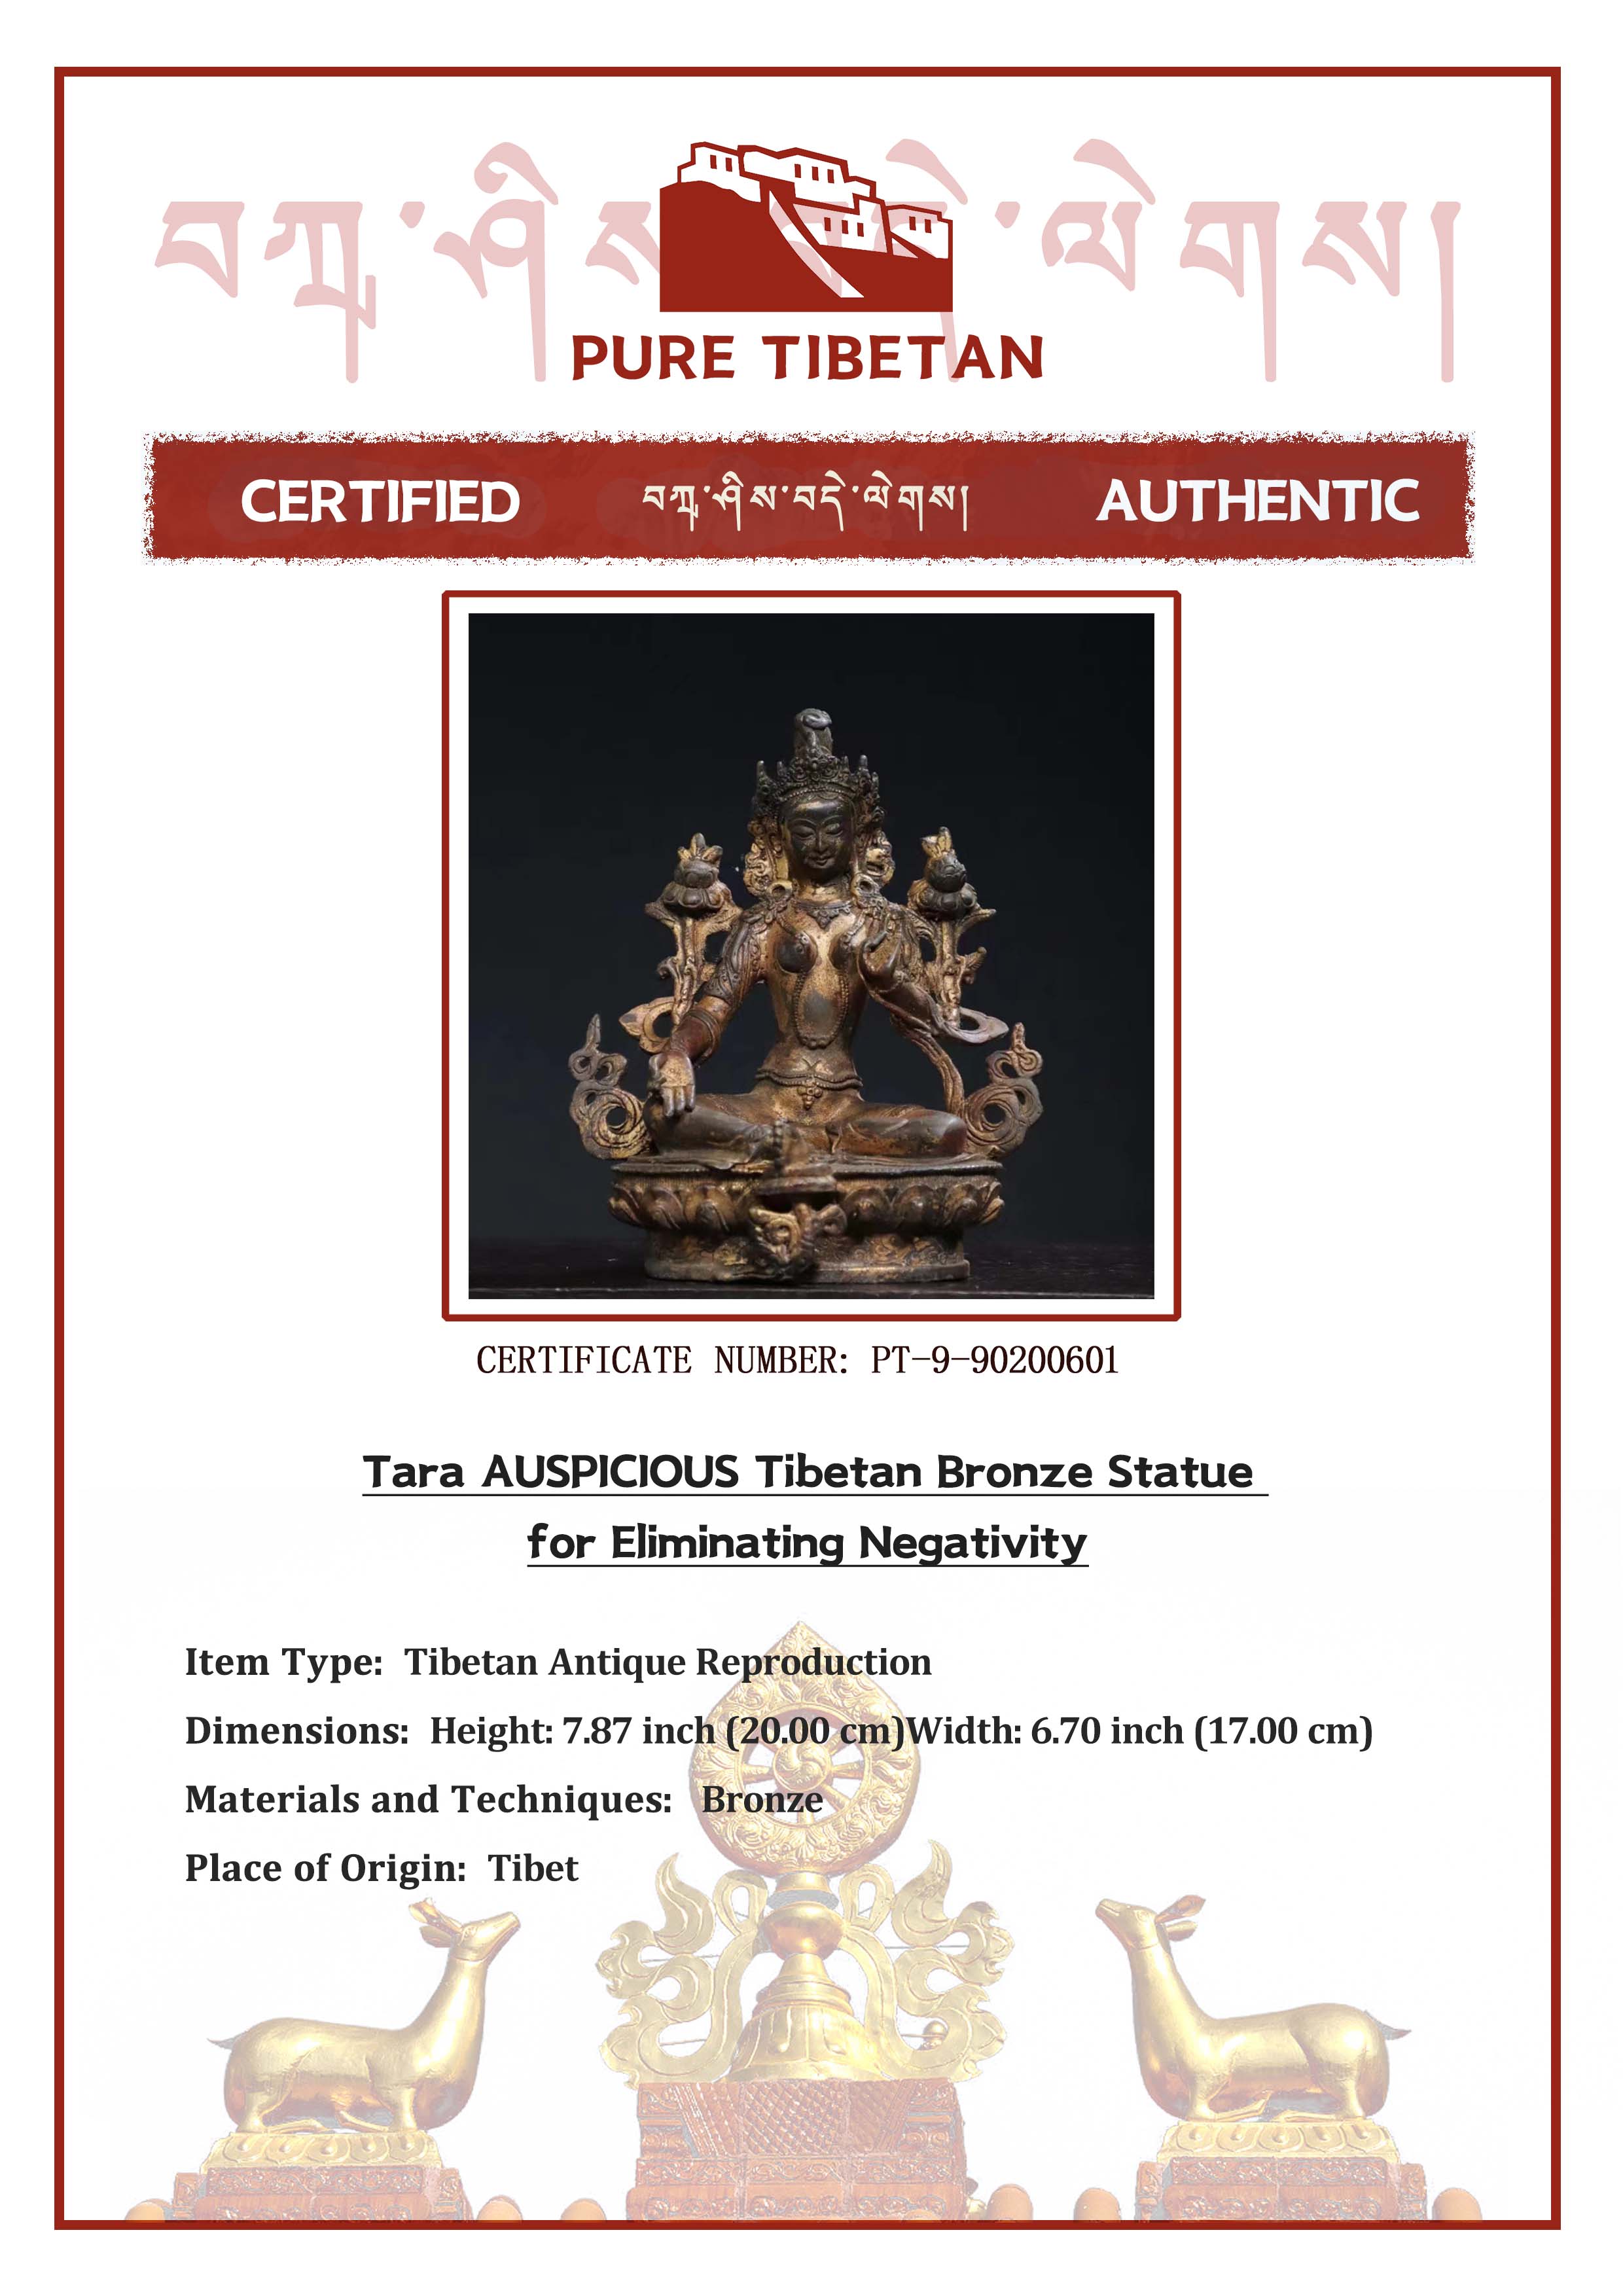 Tara AUSPICIOUS Tibetan Bronze Statue for Eliminating Negativity puretibetan